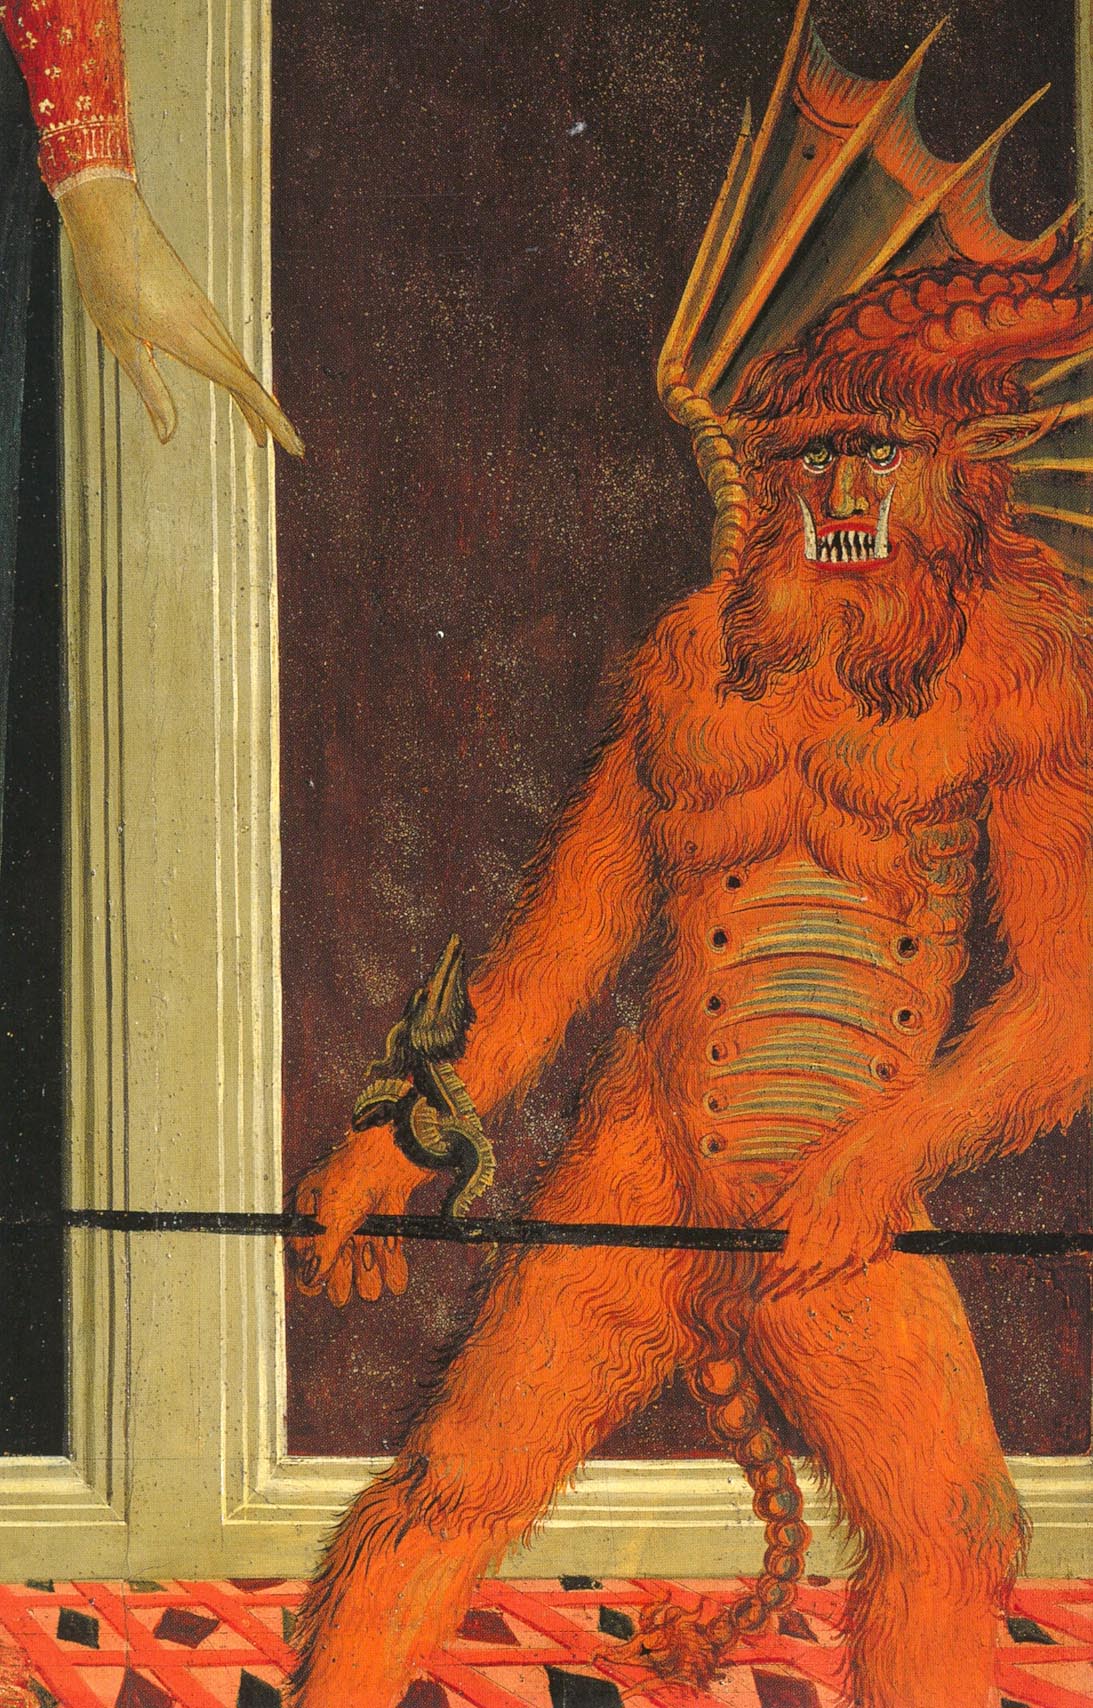 Картина черта. Доменико демон. Изображение дьявола в живописи.